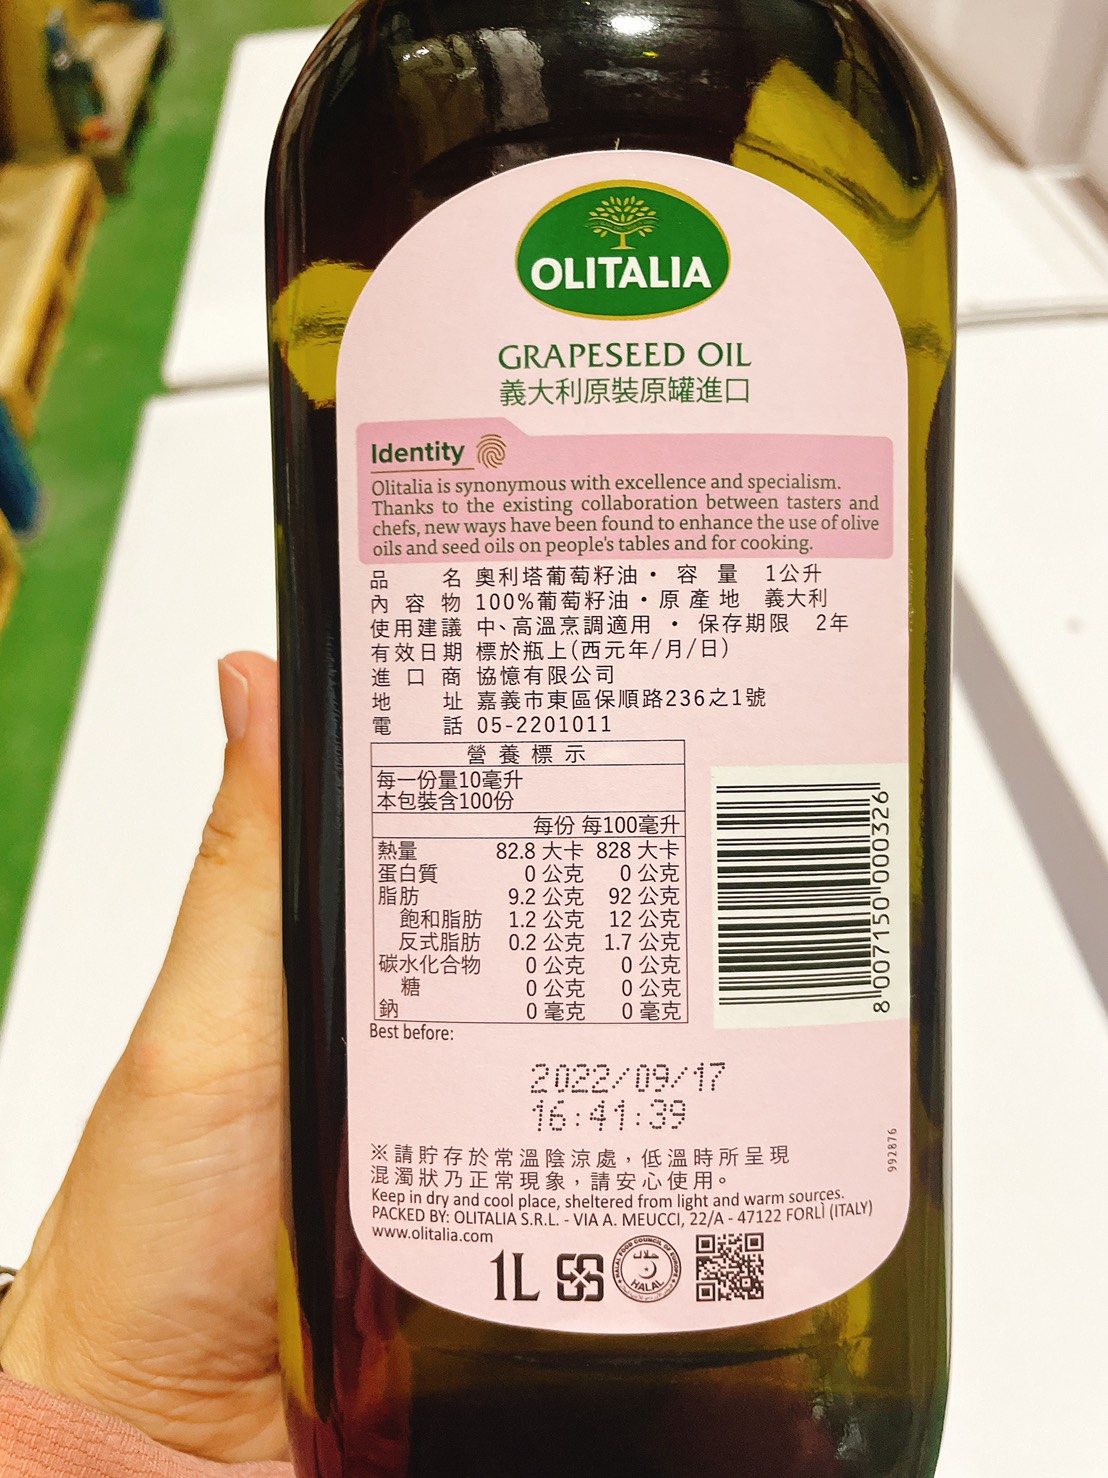 【Olitalia奧利塔】葵花油 玄米油 橄欖油 橄欖+葵花油 葡萄籽油禮盒